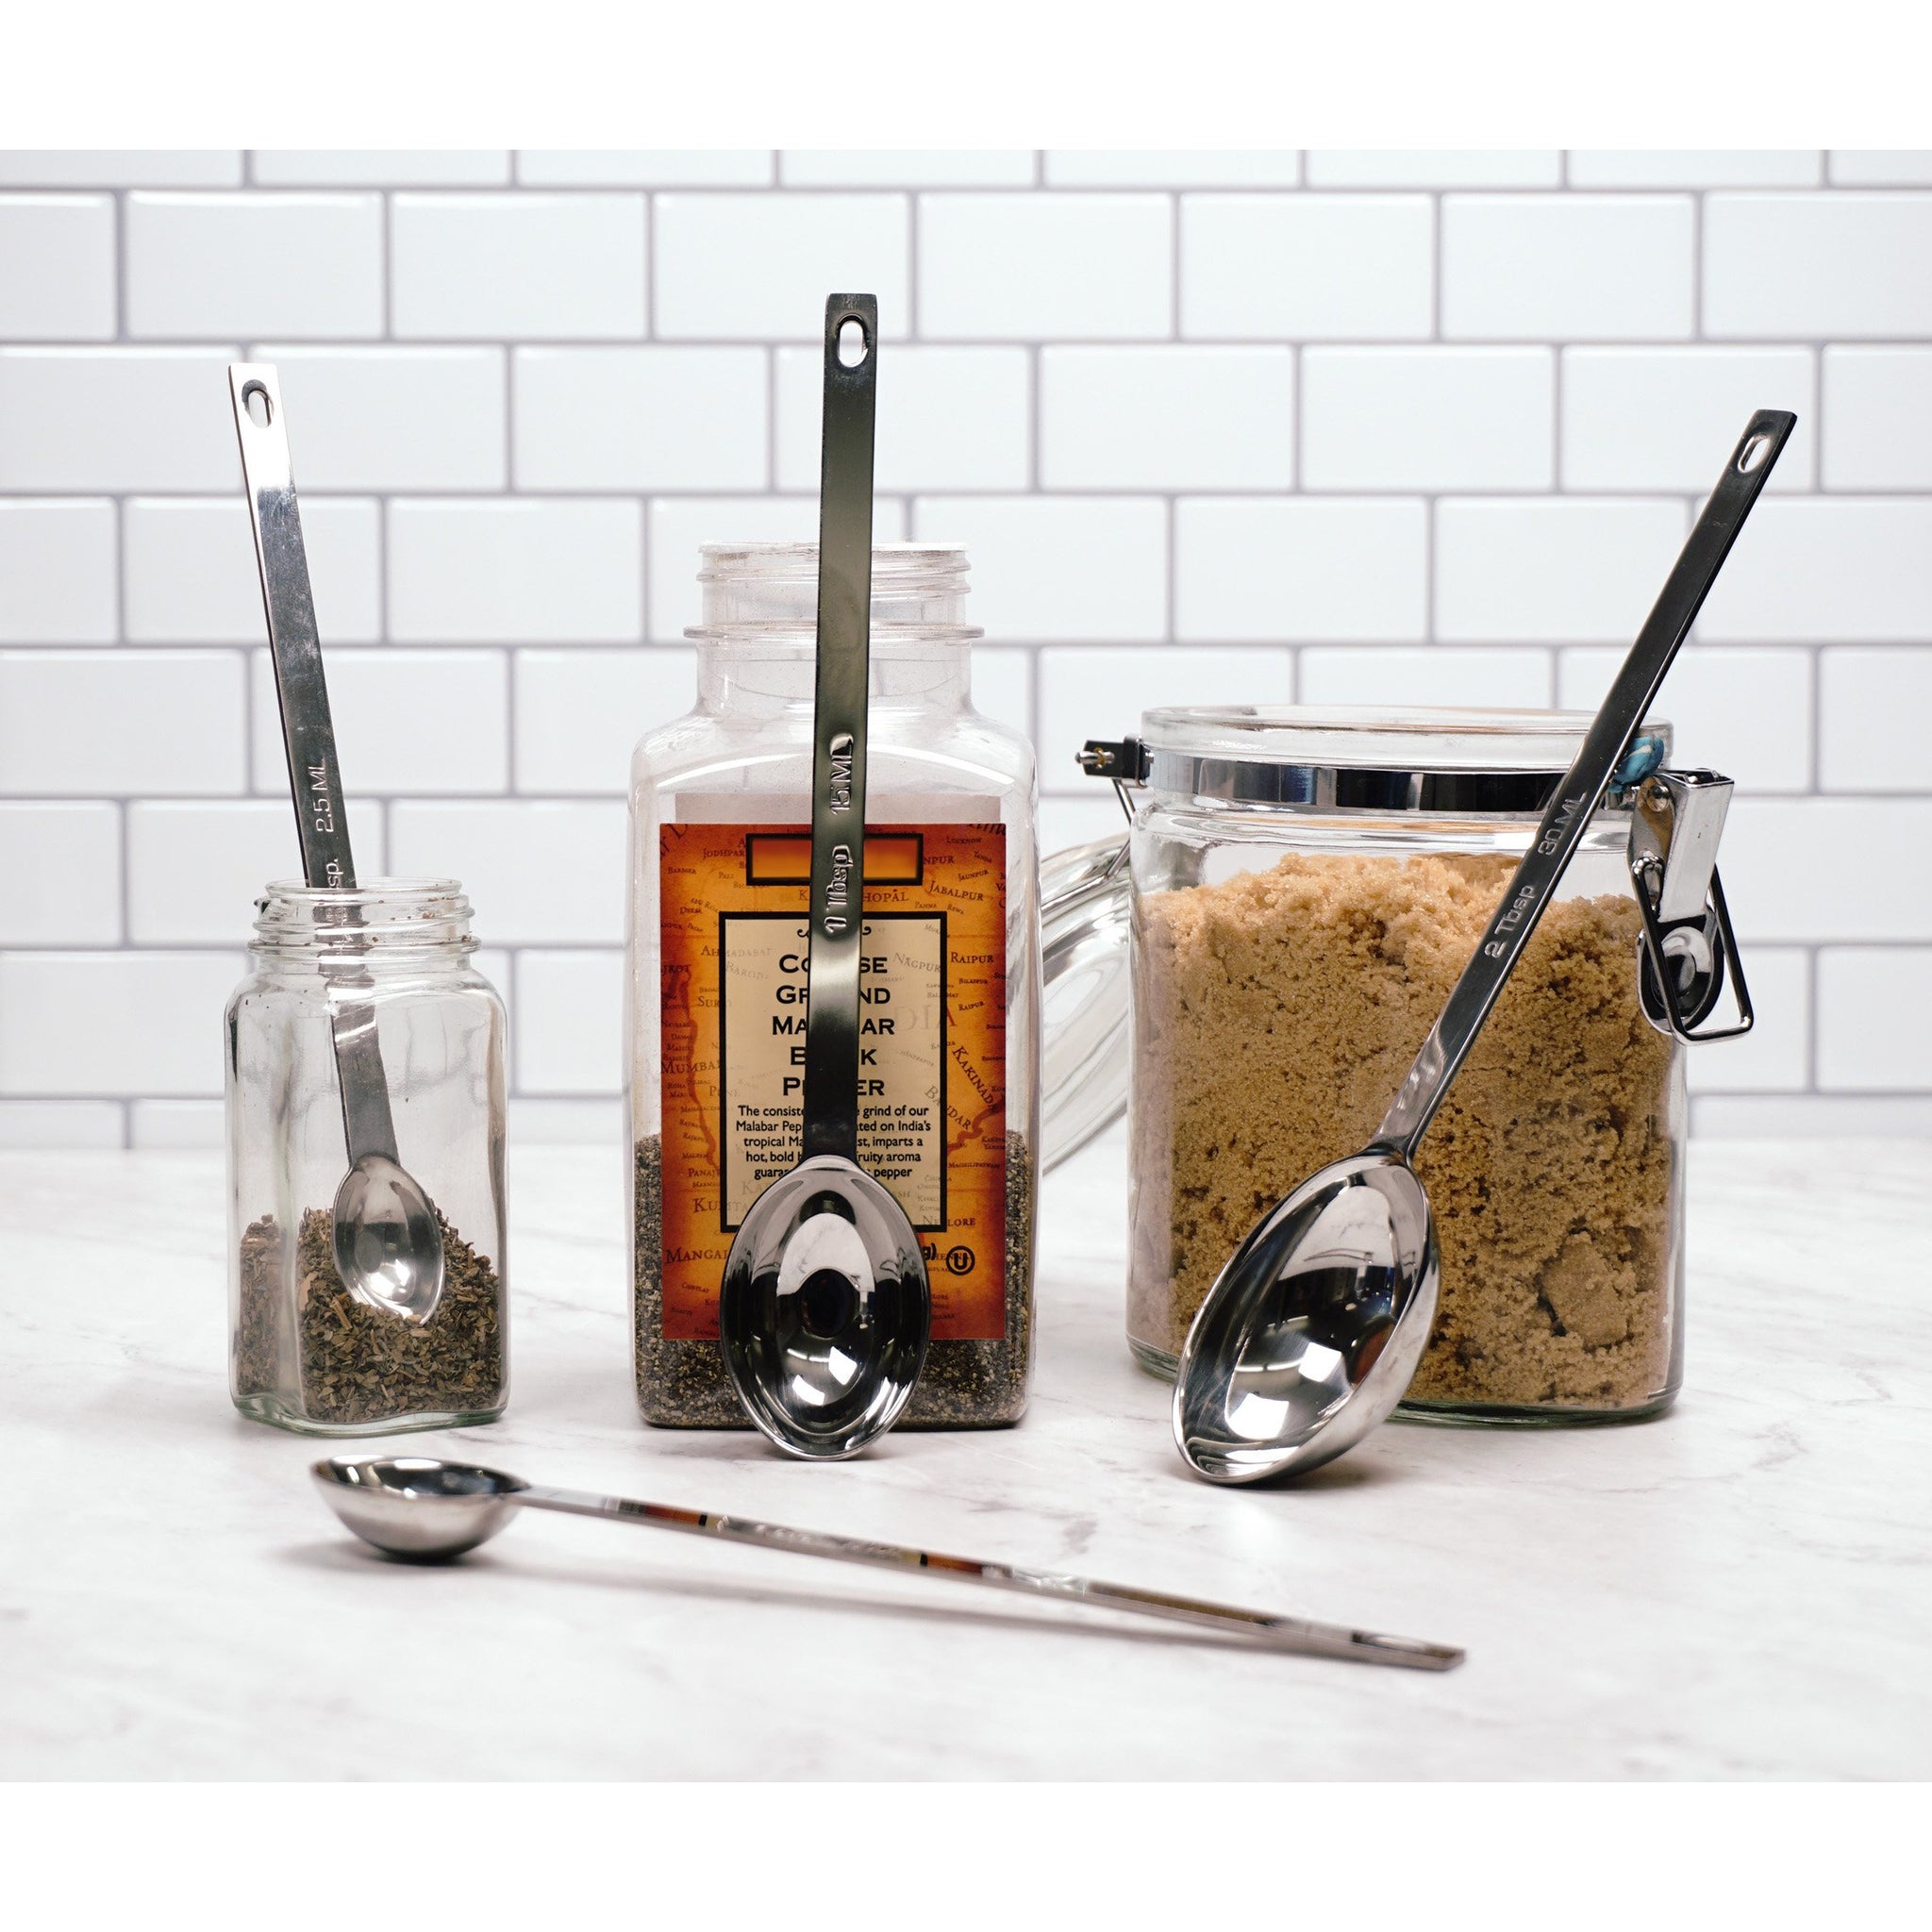 Endurance Long Measuring Spoons - Stainless Steel – The Seasoned Gourmet